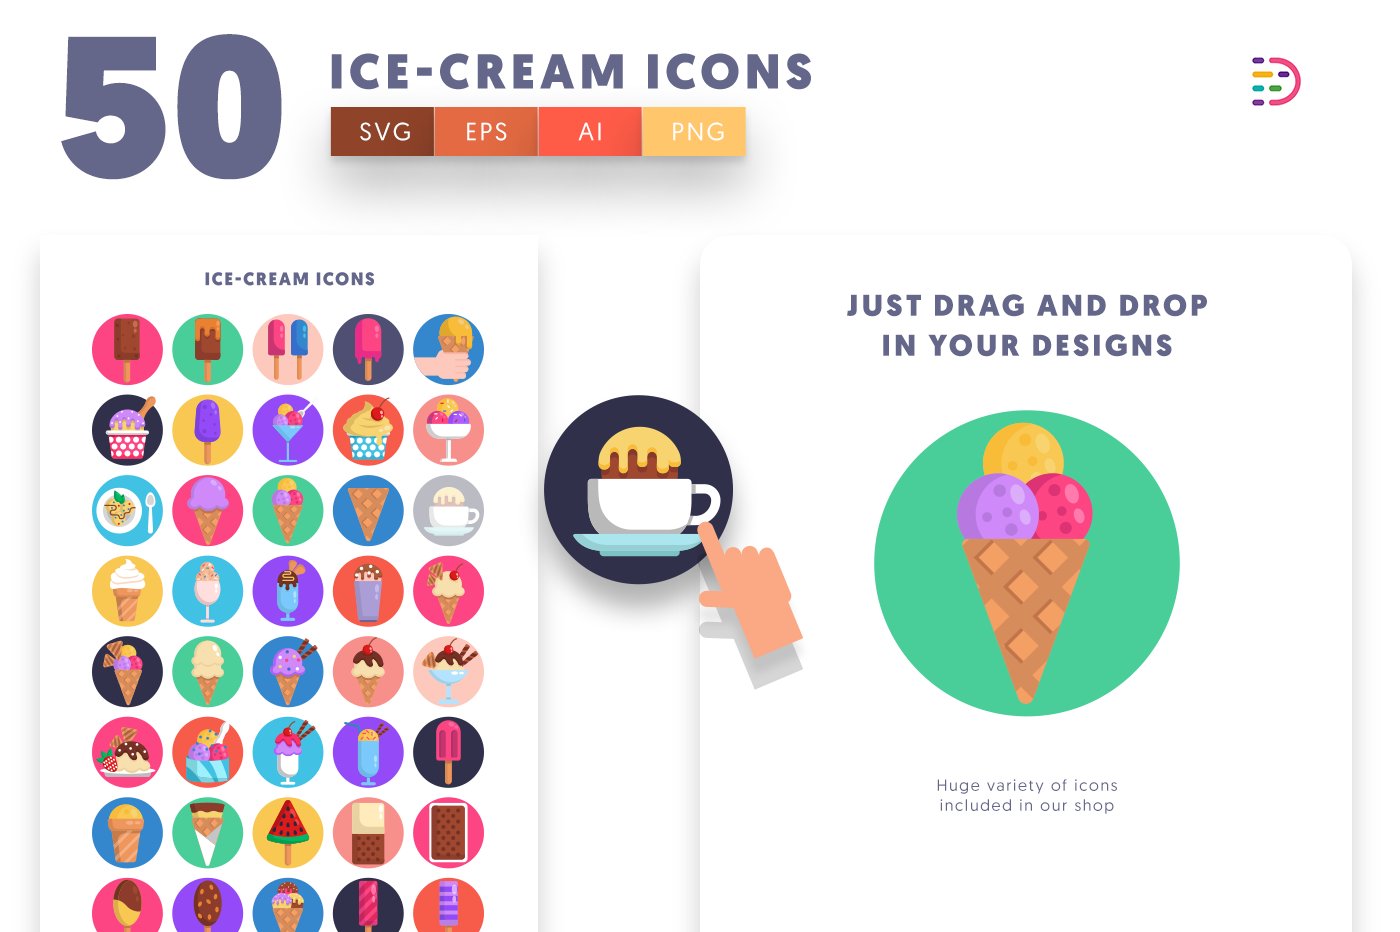 icecream icons cover 1 900